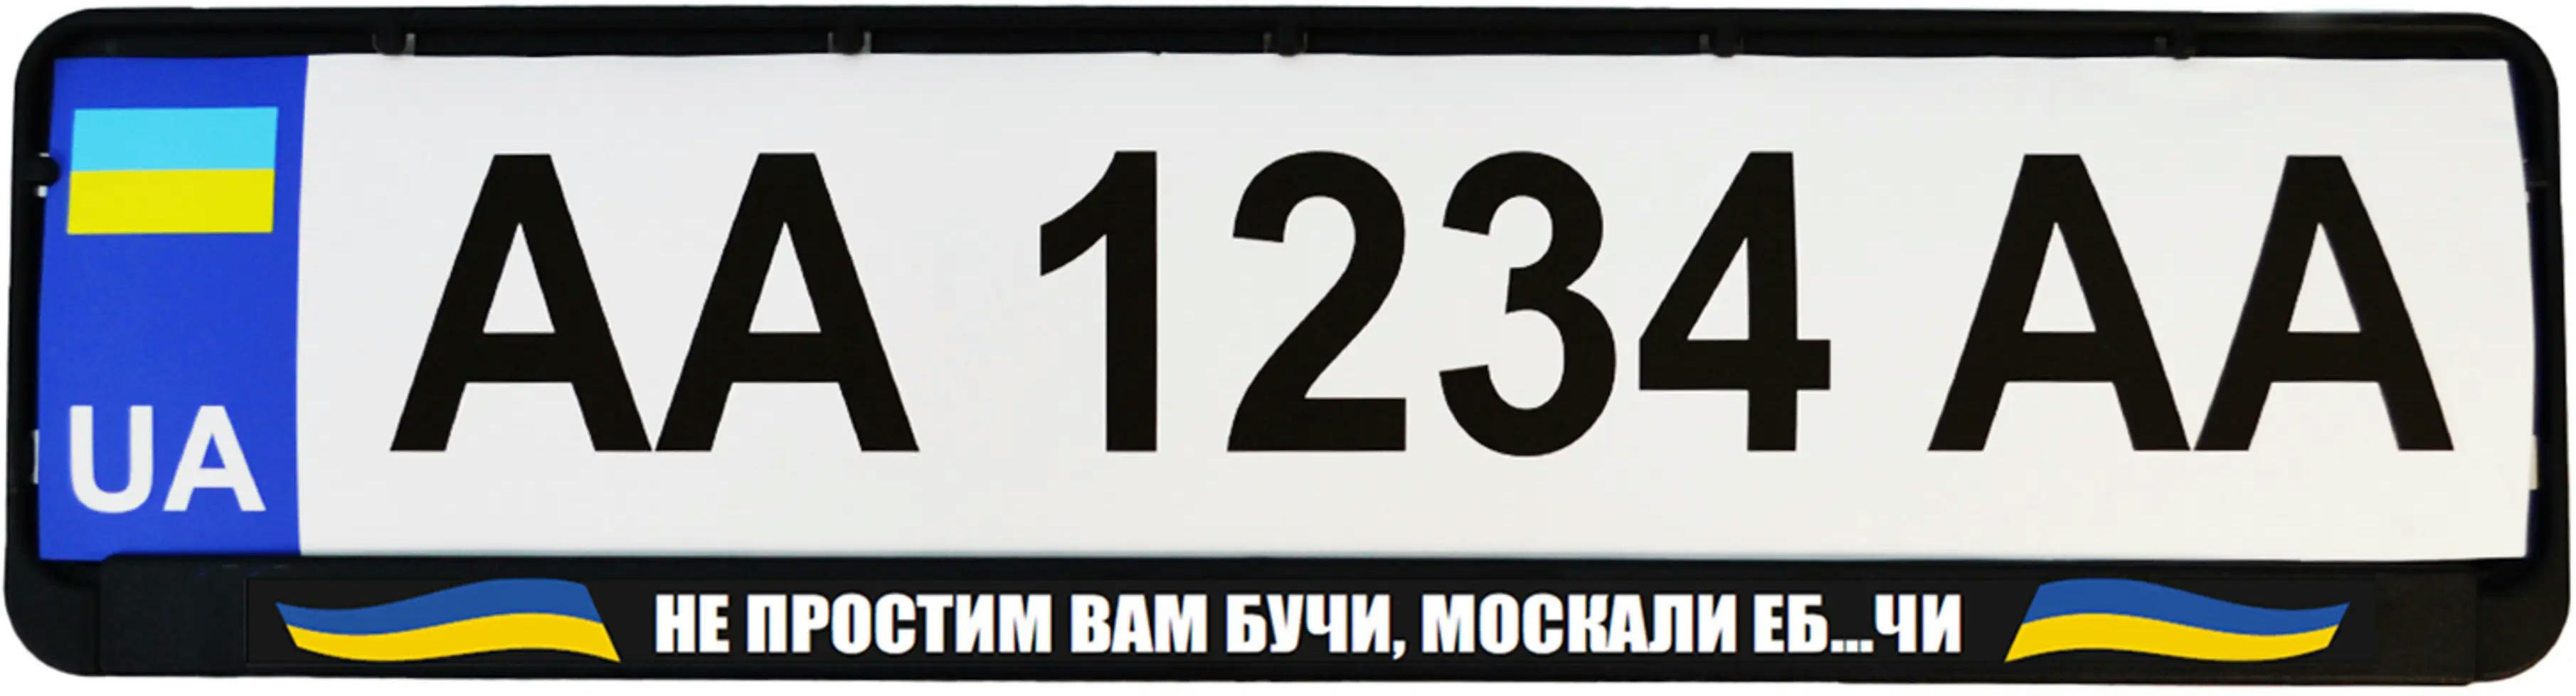 Рамка номерного знака Poputchik пластиковая патриотическая Не простим вам Бучи, москали еб…чи (24-265-IS) фото 2